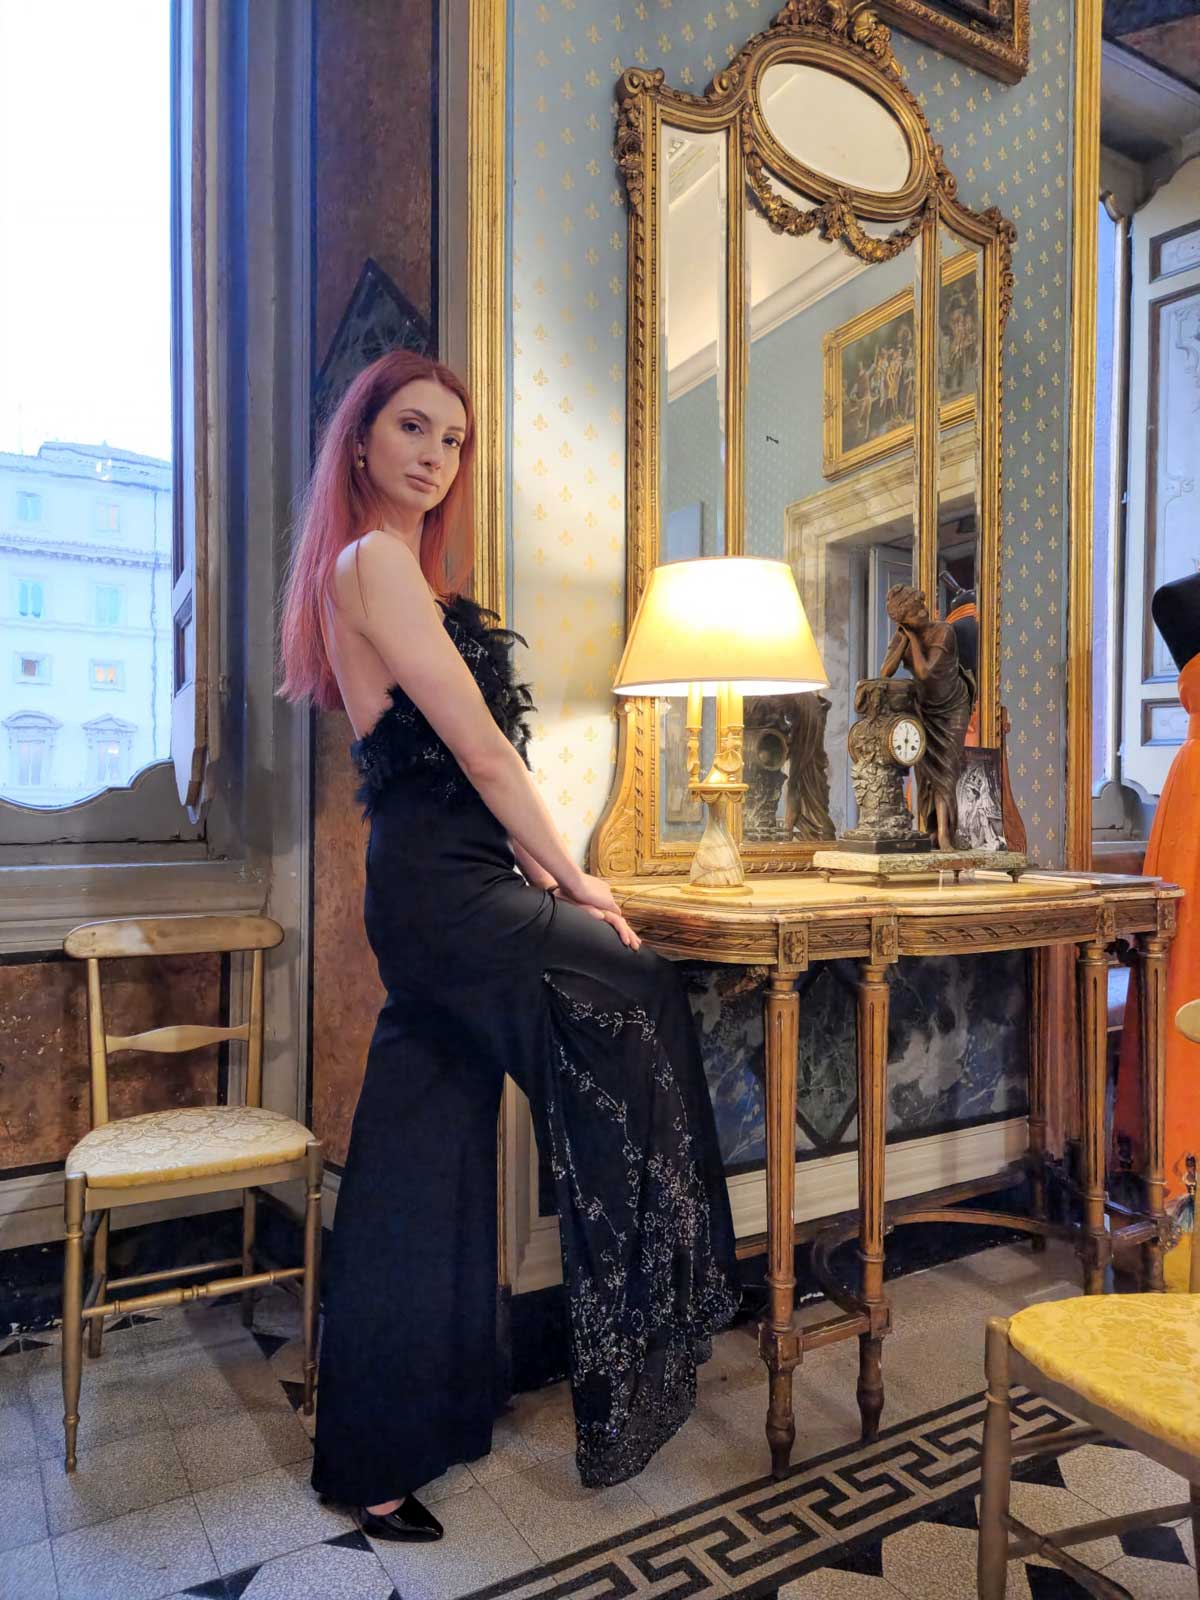 Il fascino dei colori - sfilata modelle nello storico Palazzo Ferrajoli - donna abito in nero elegante